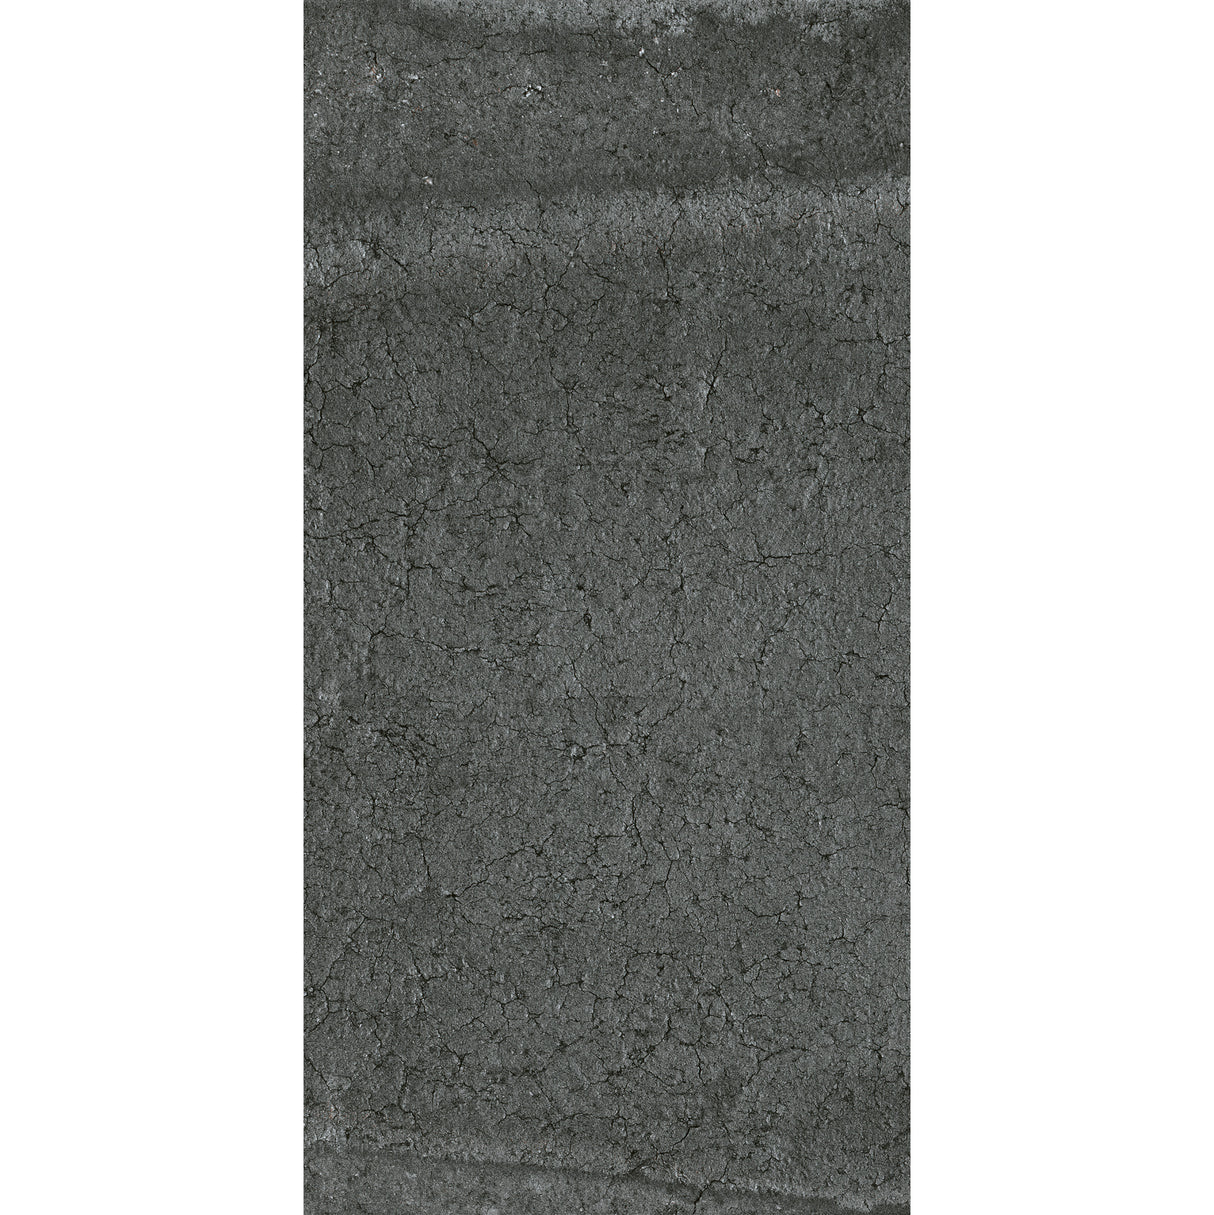 Carrelage Effet Pierre 30x60 Stone Ash R11 Extérieur